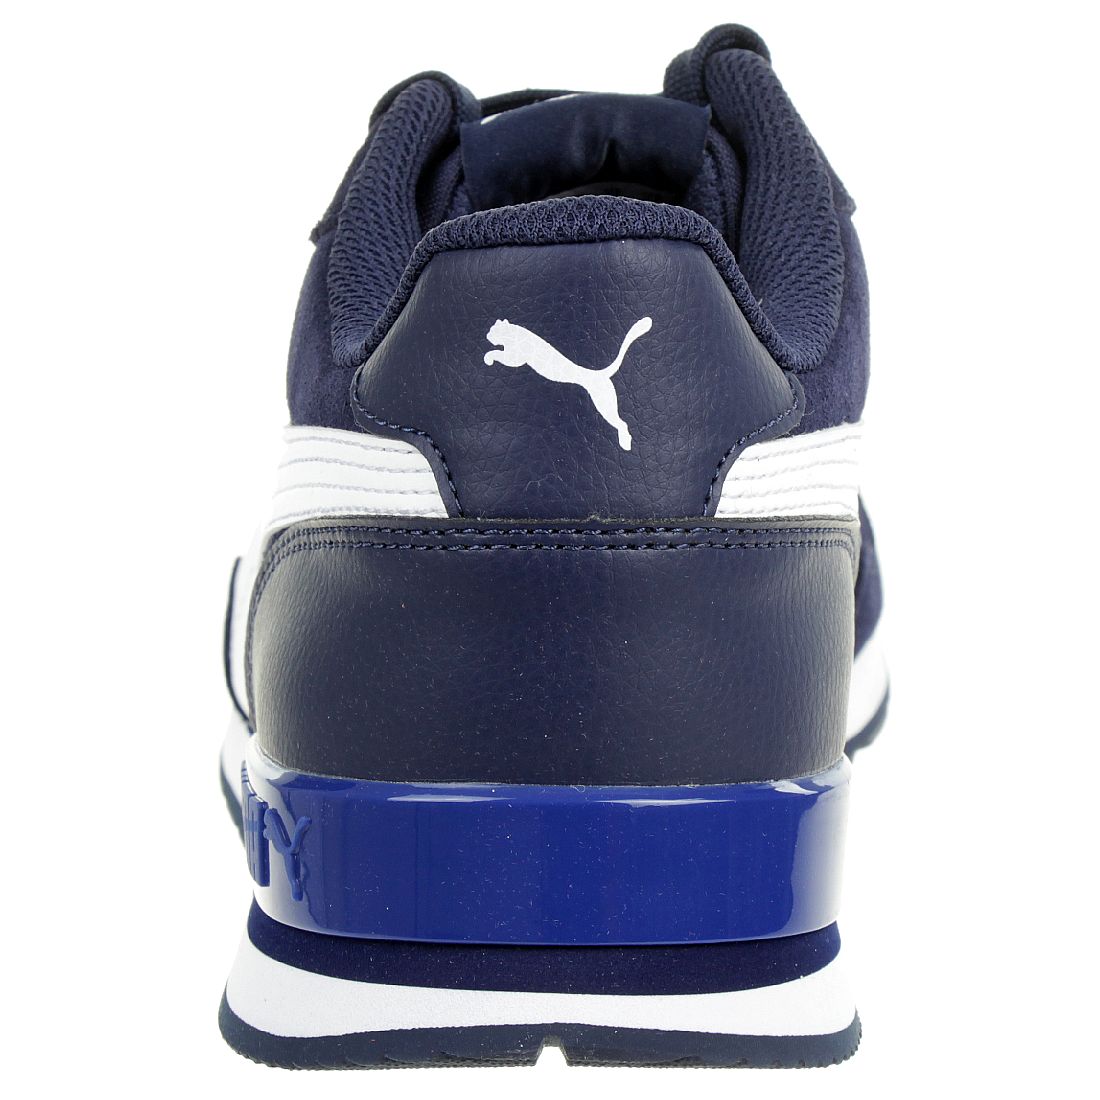 Puma ST Runner v2 SD Sneaker Schuhe 365279 10 Herren Schuhe blau